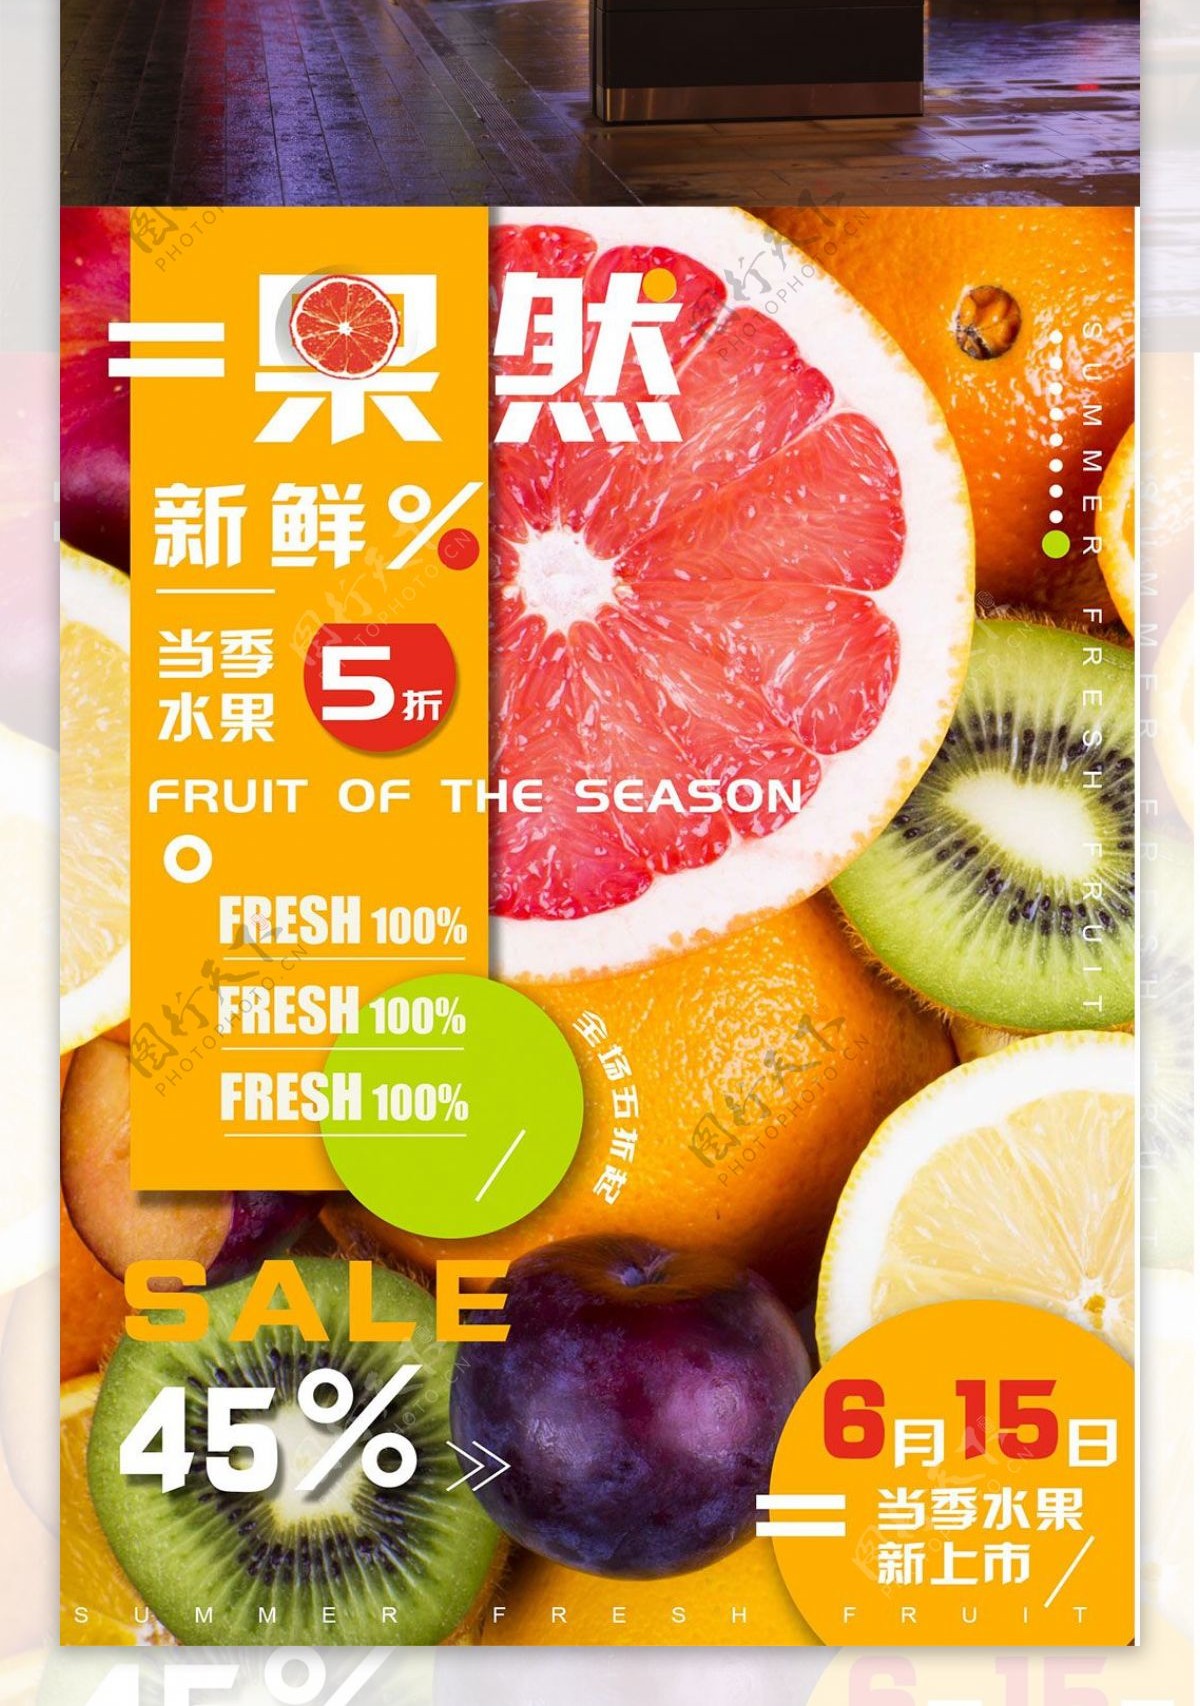 夏日水果上市简约橘黄色商业海报设计模板